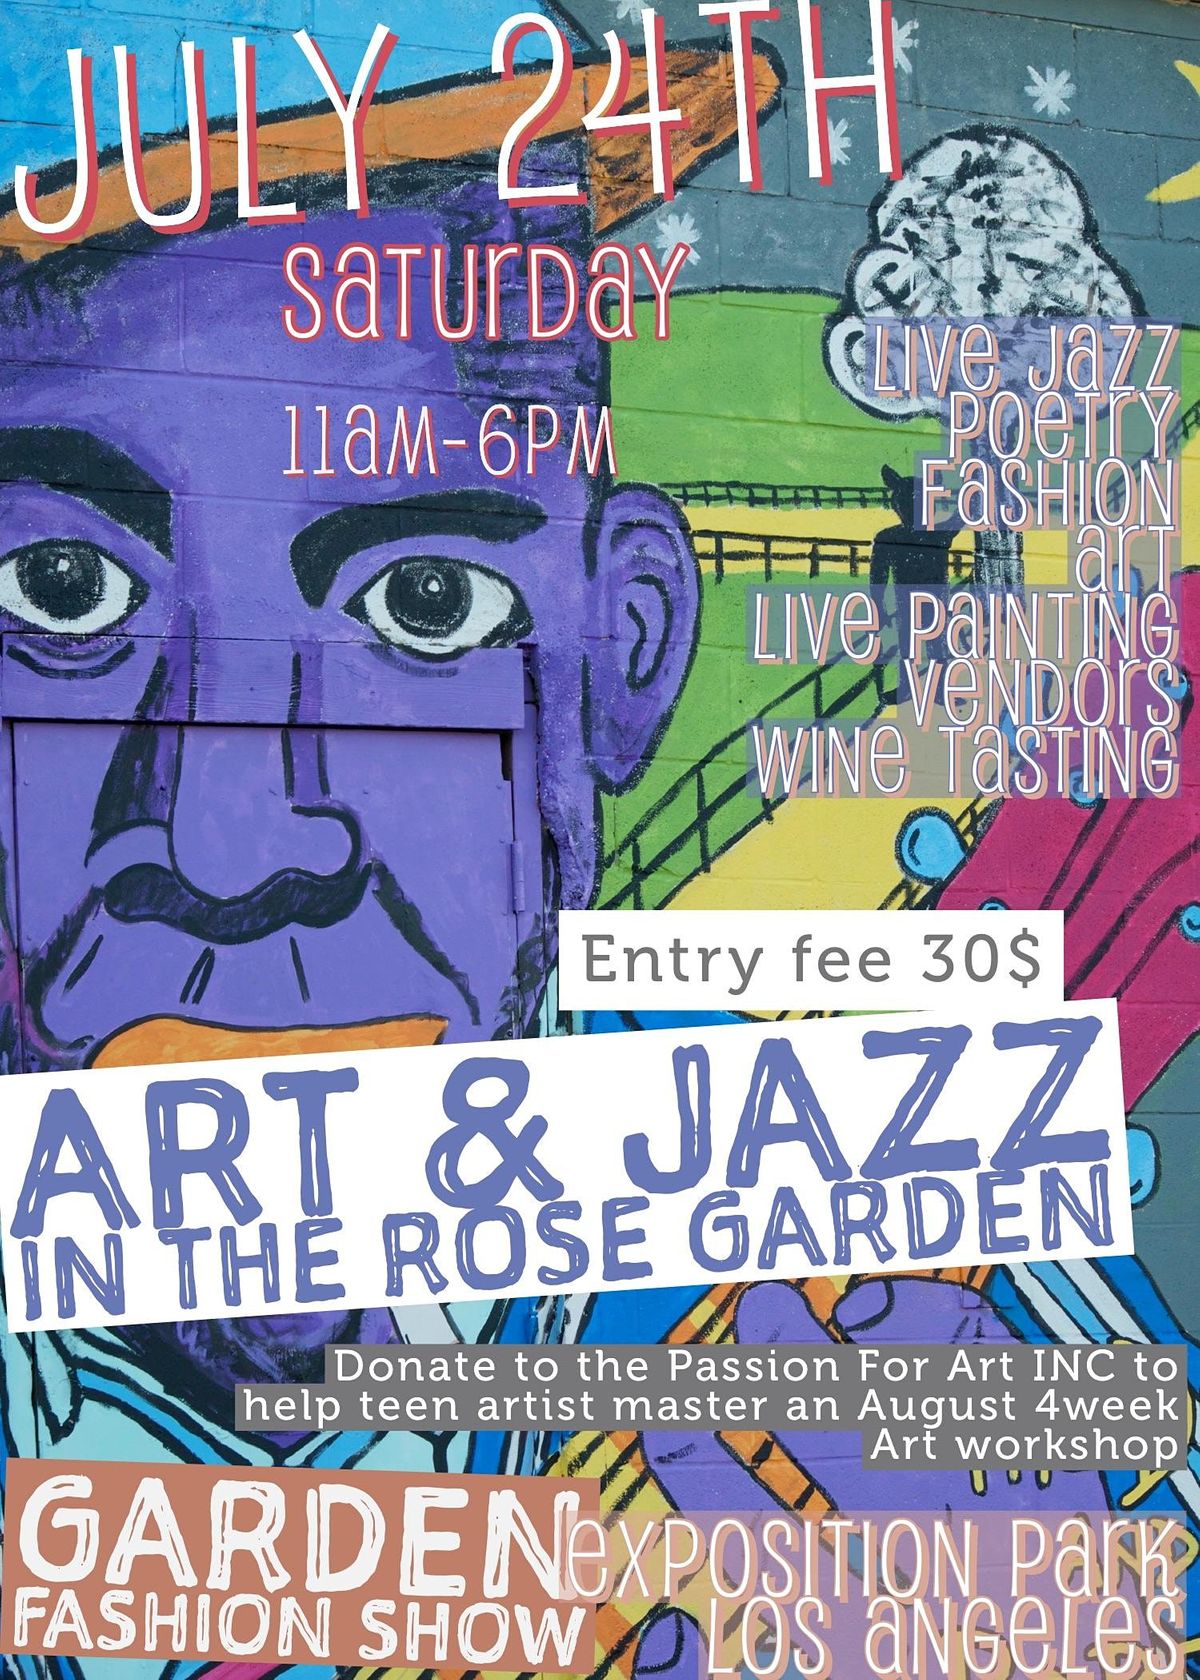 Art & Jazz in the Rose Garden featuring Dysonna Garden Fashion Show